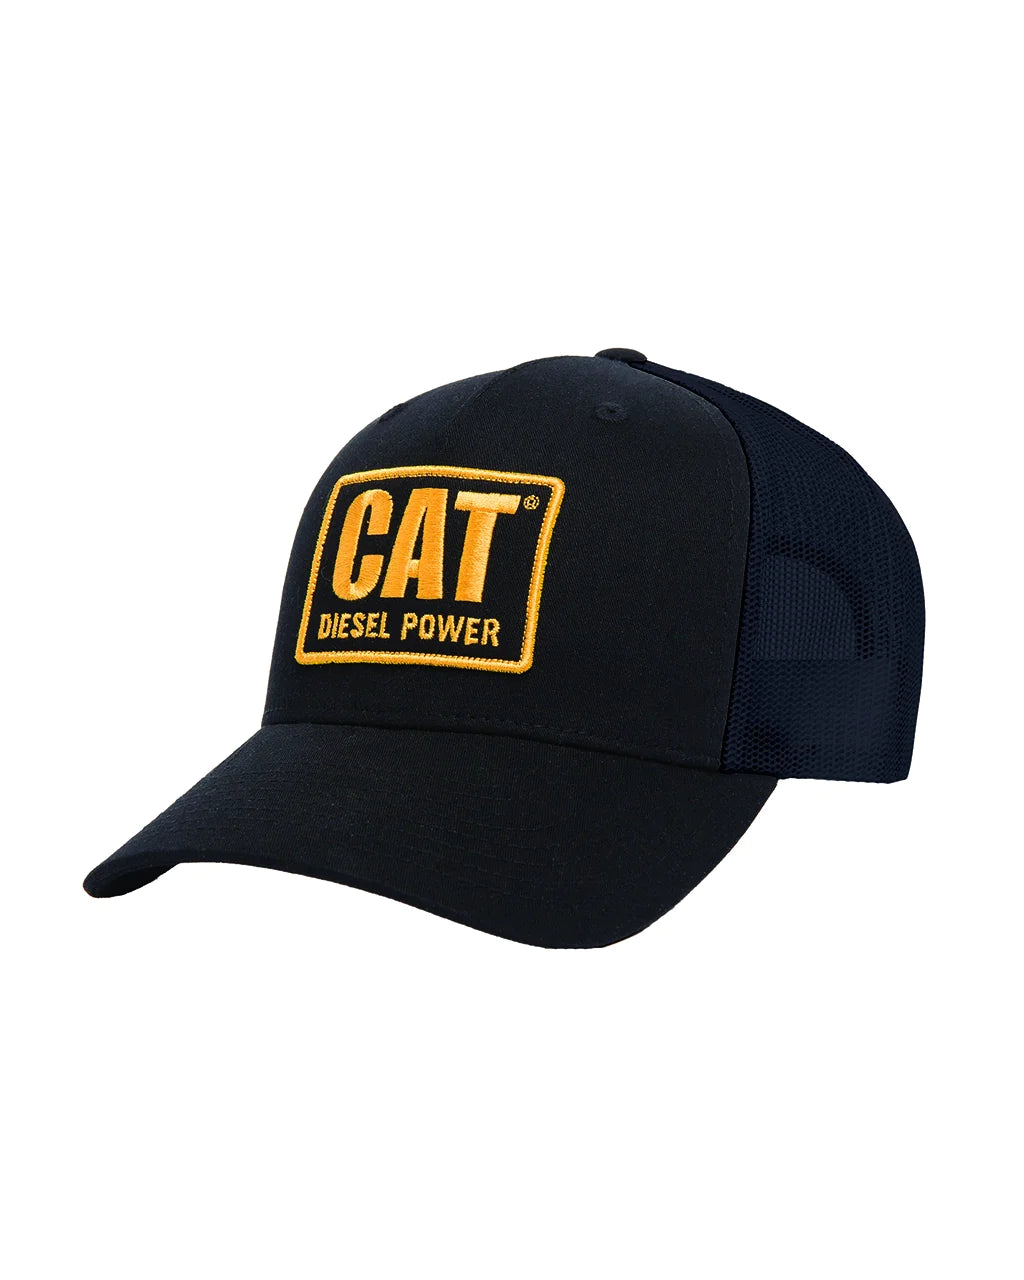 Cat X Richardson 112 Diesel Power Trucker Hat - Black